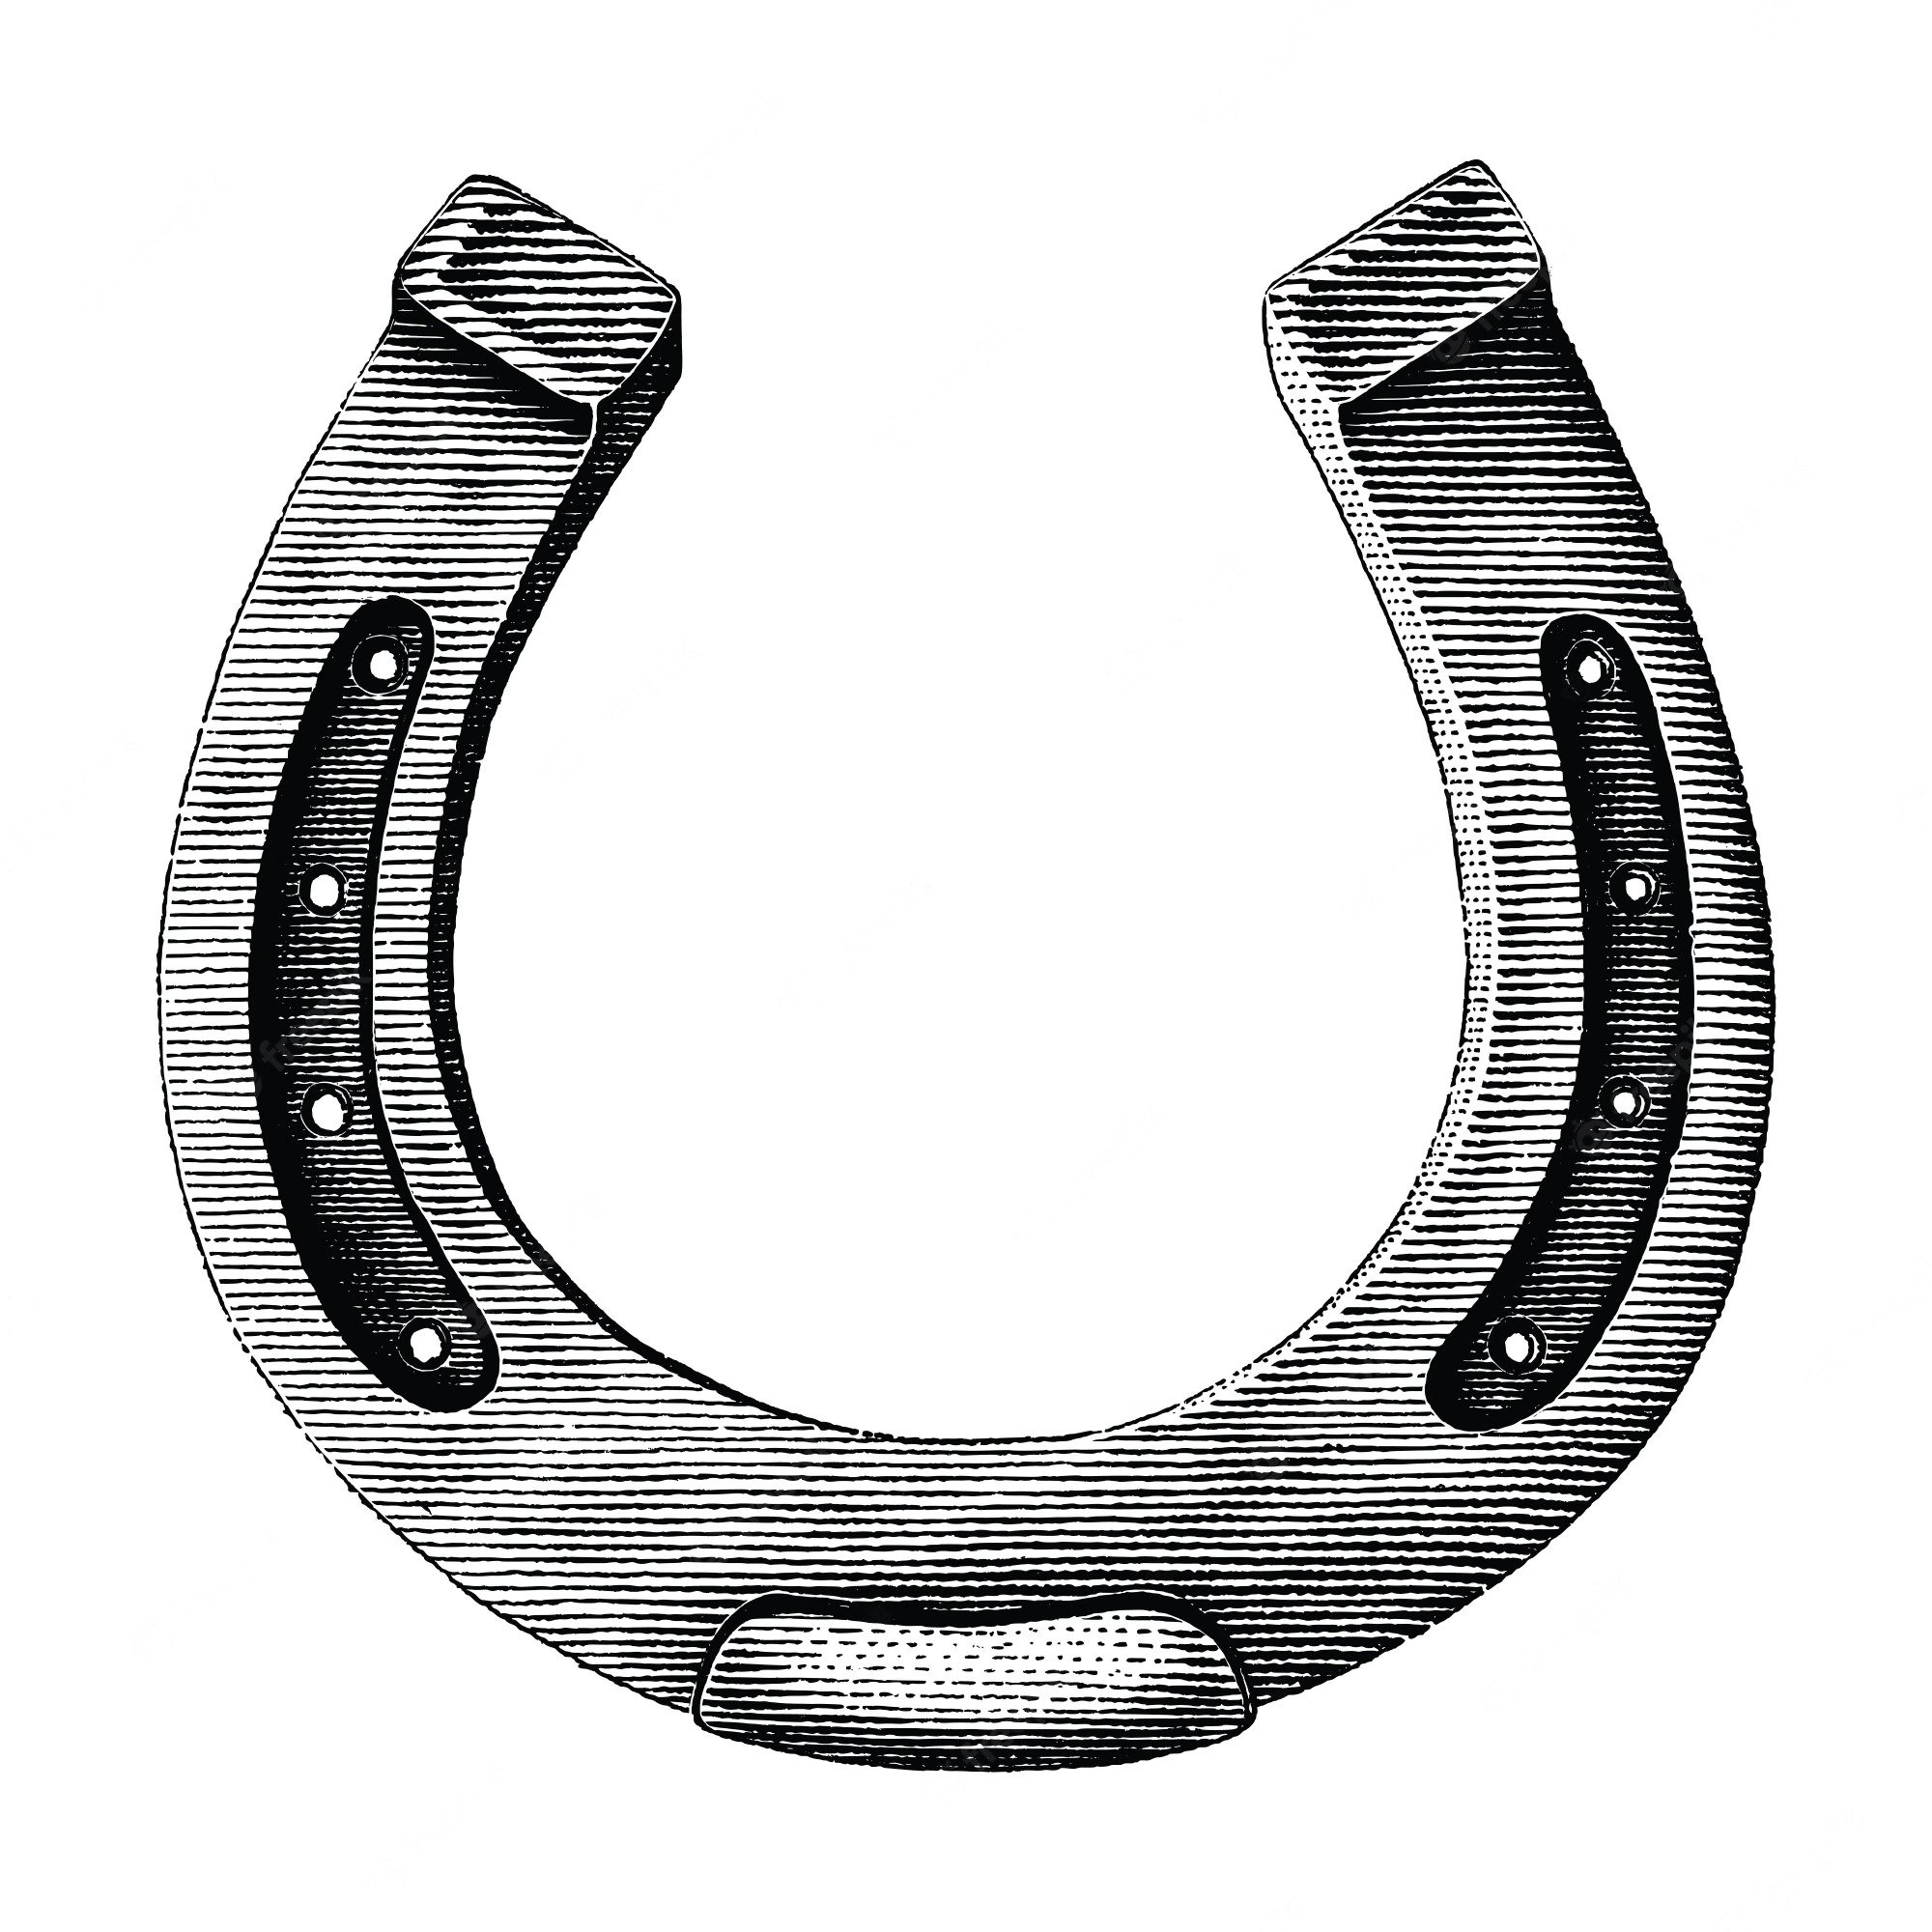 Digital illustration of horseshoe